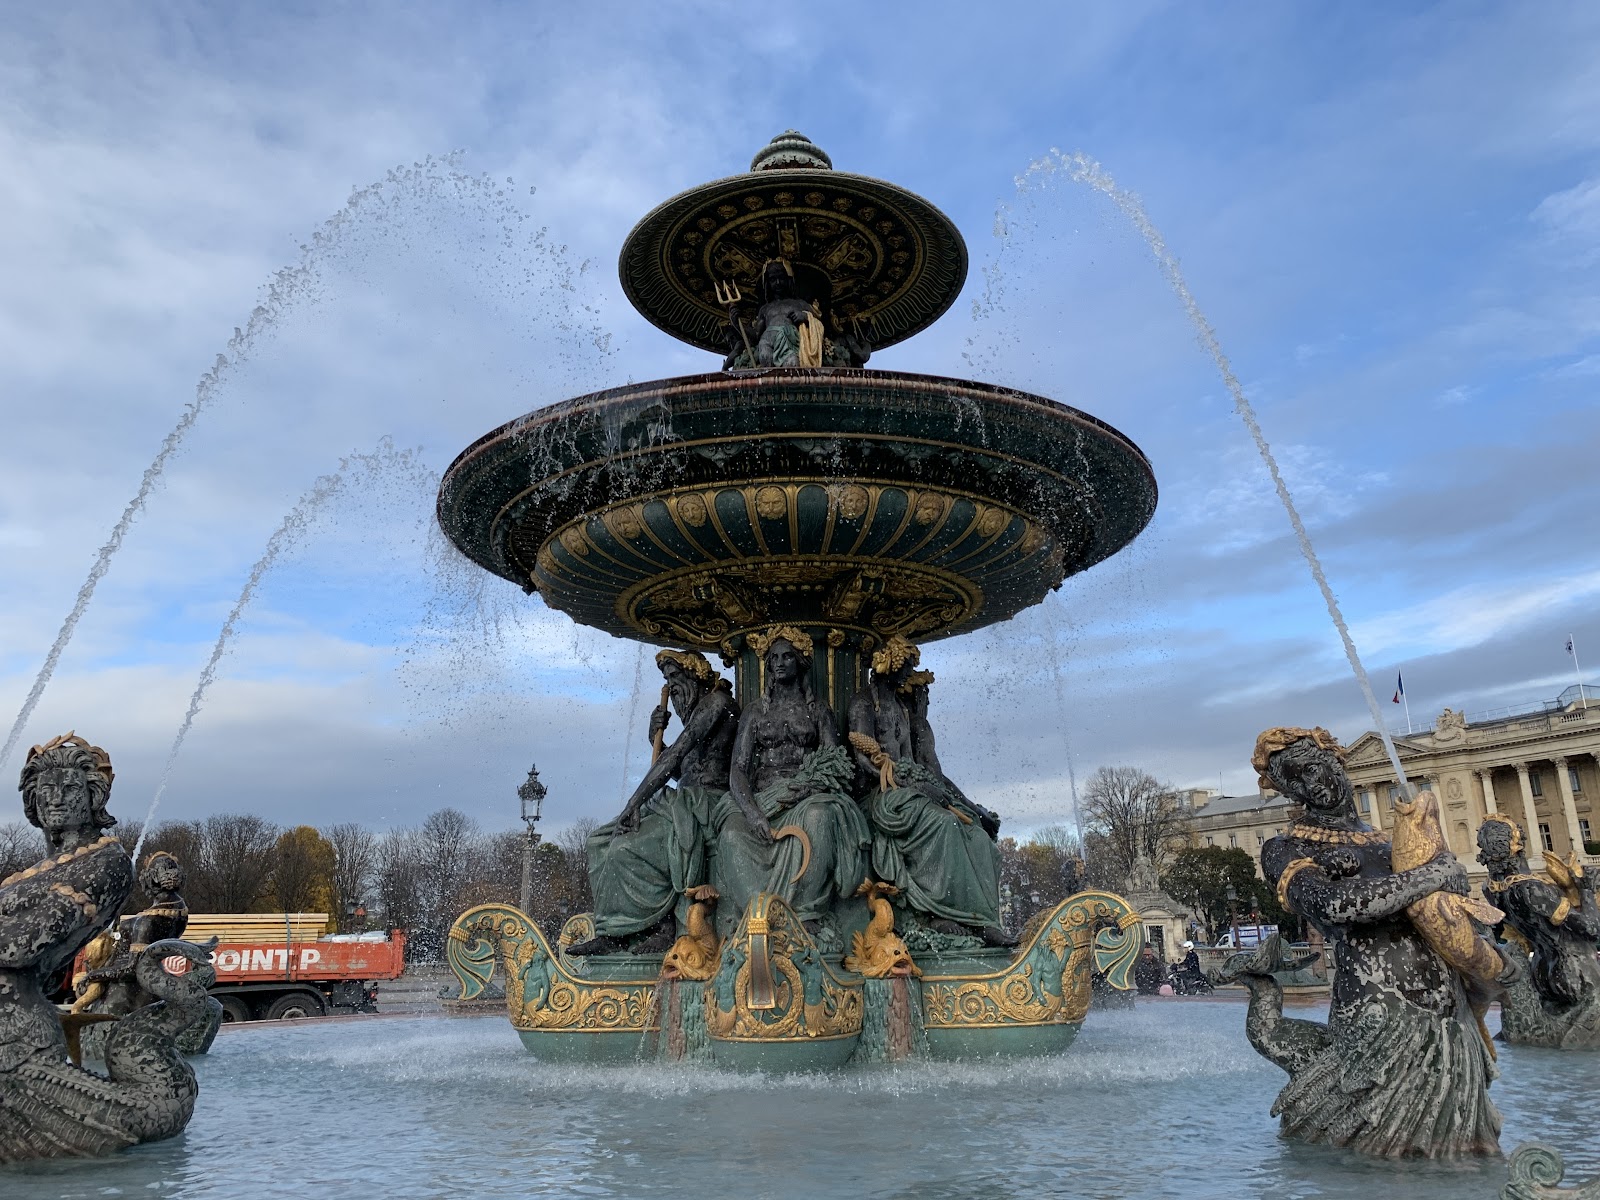 The Fountain on the Place de la Concorde